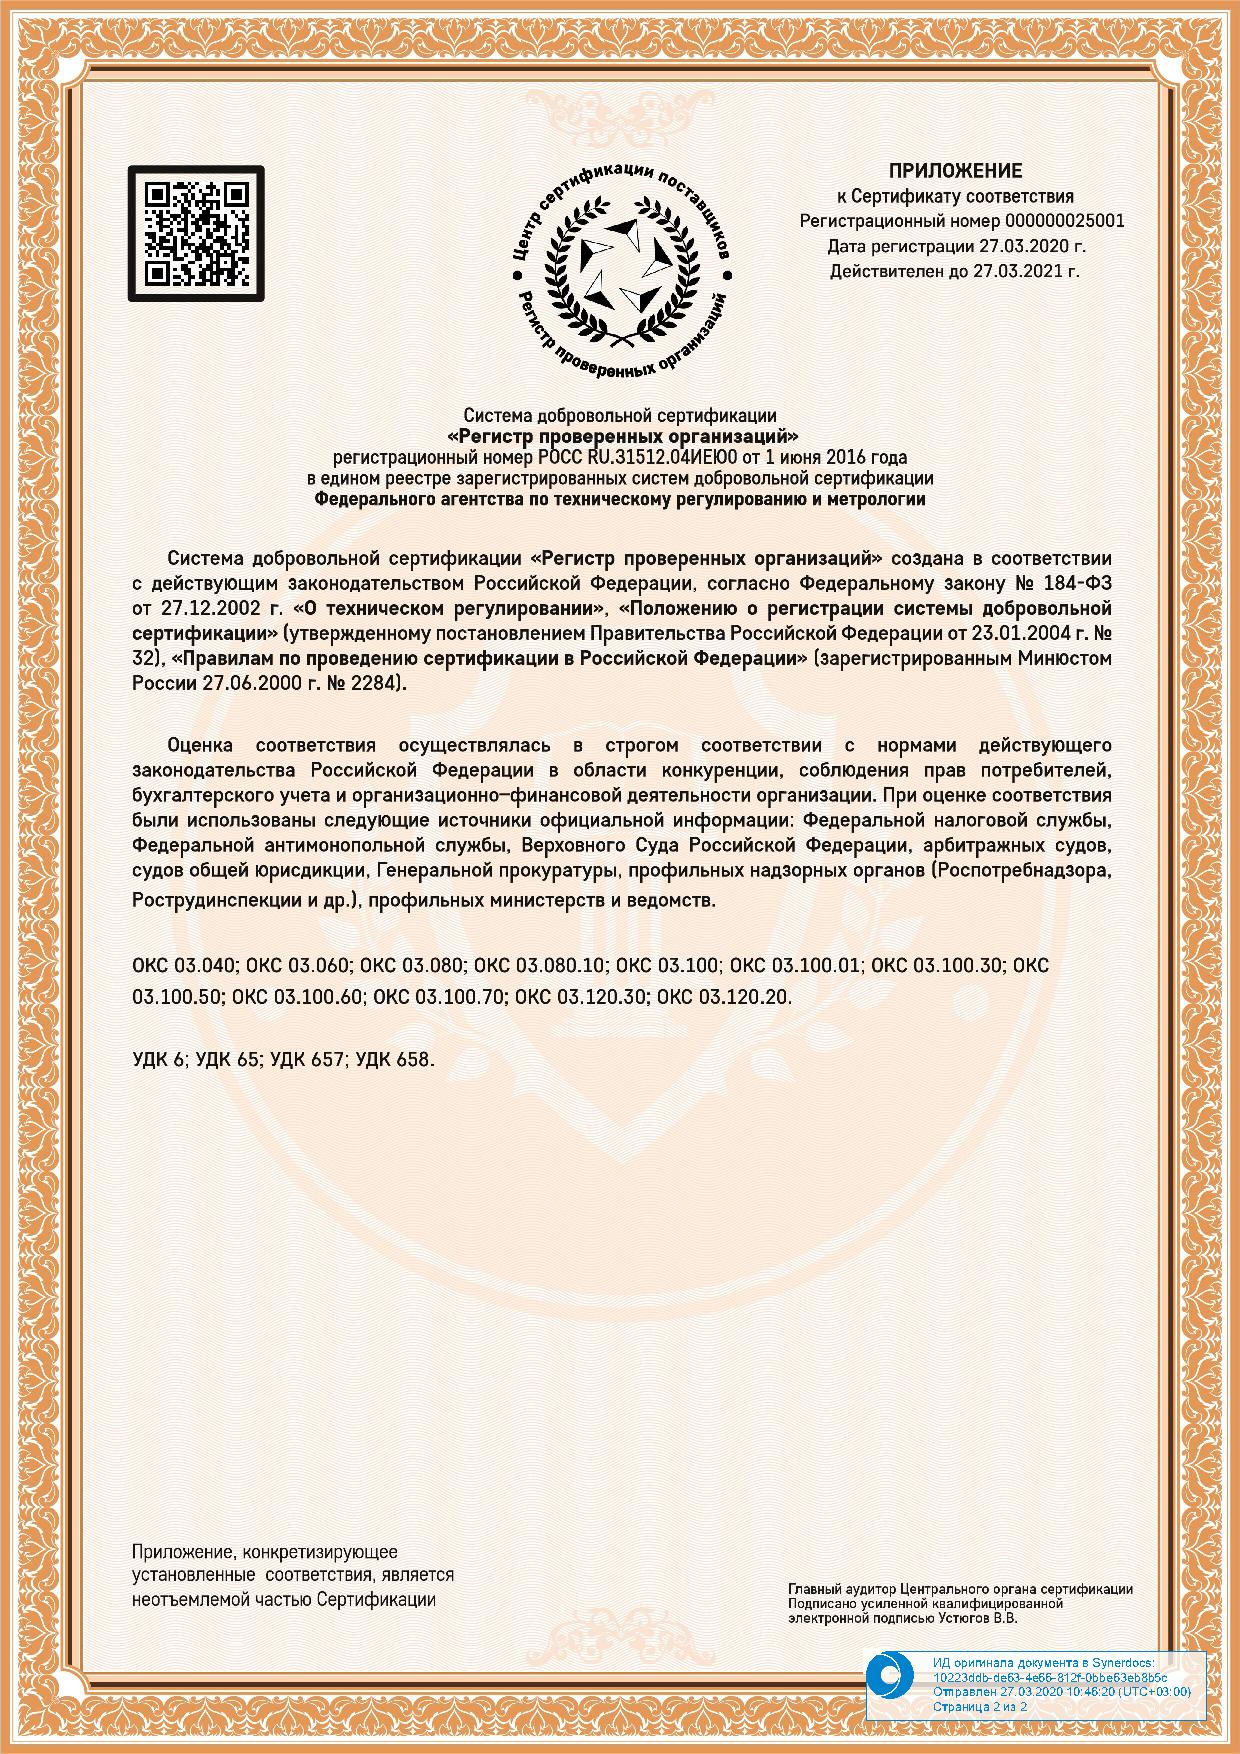 Сертификат соответствия на поставку продукции вид 2